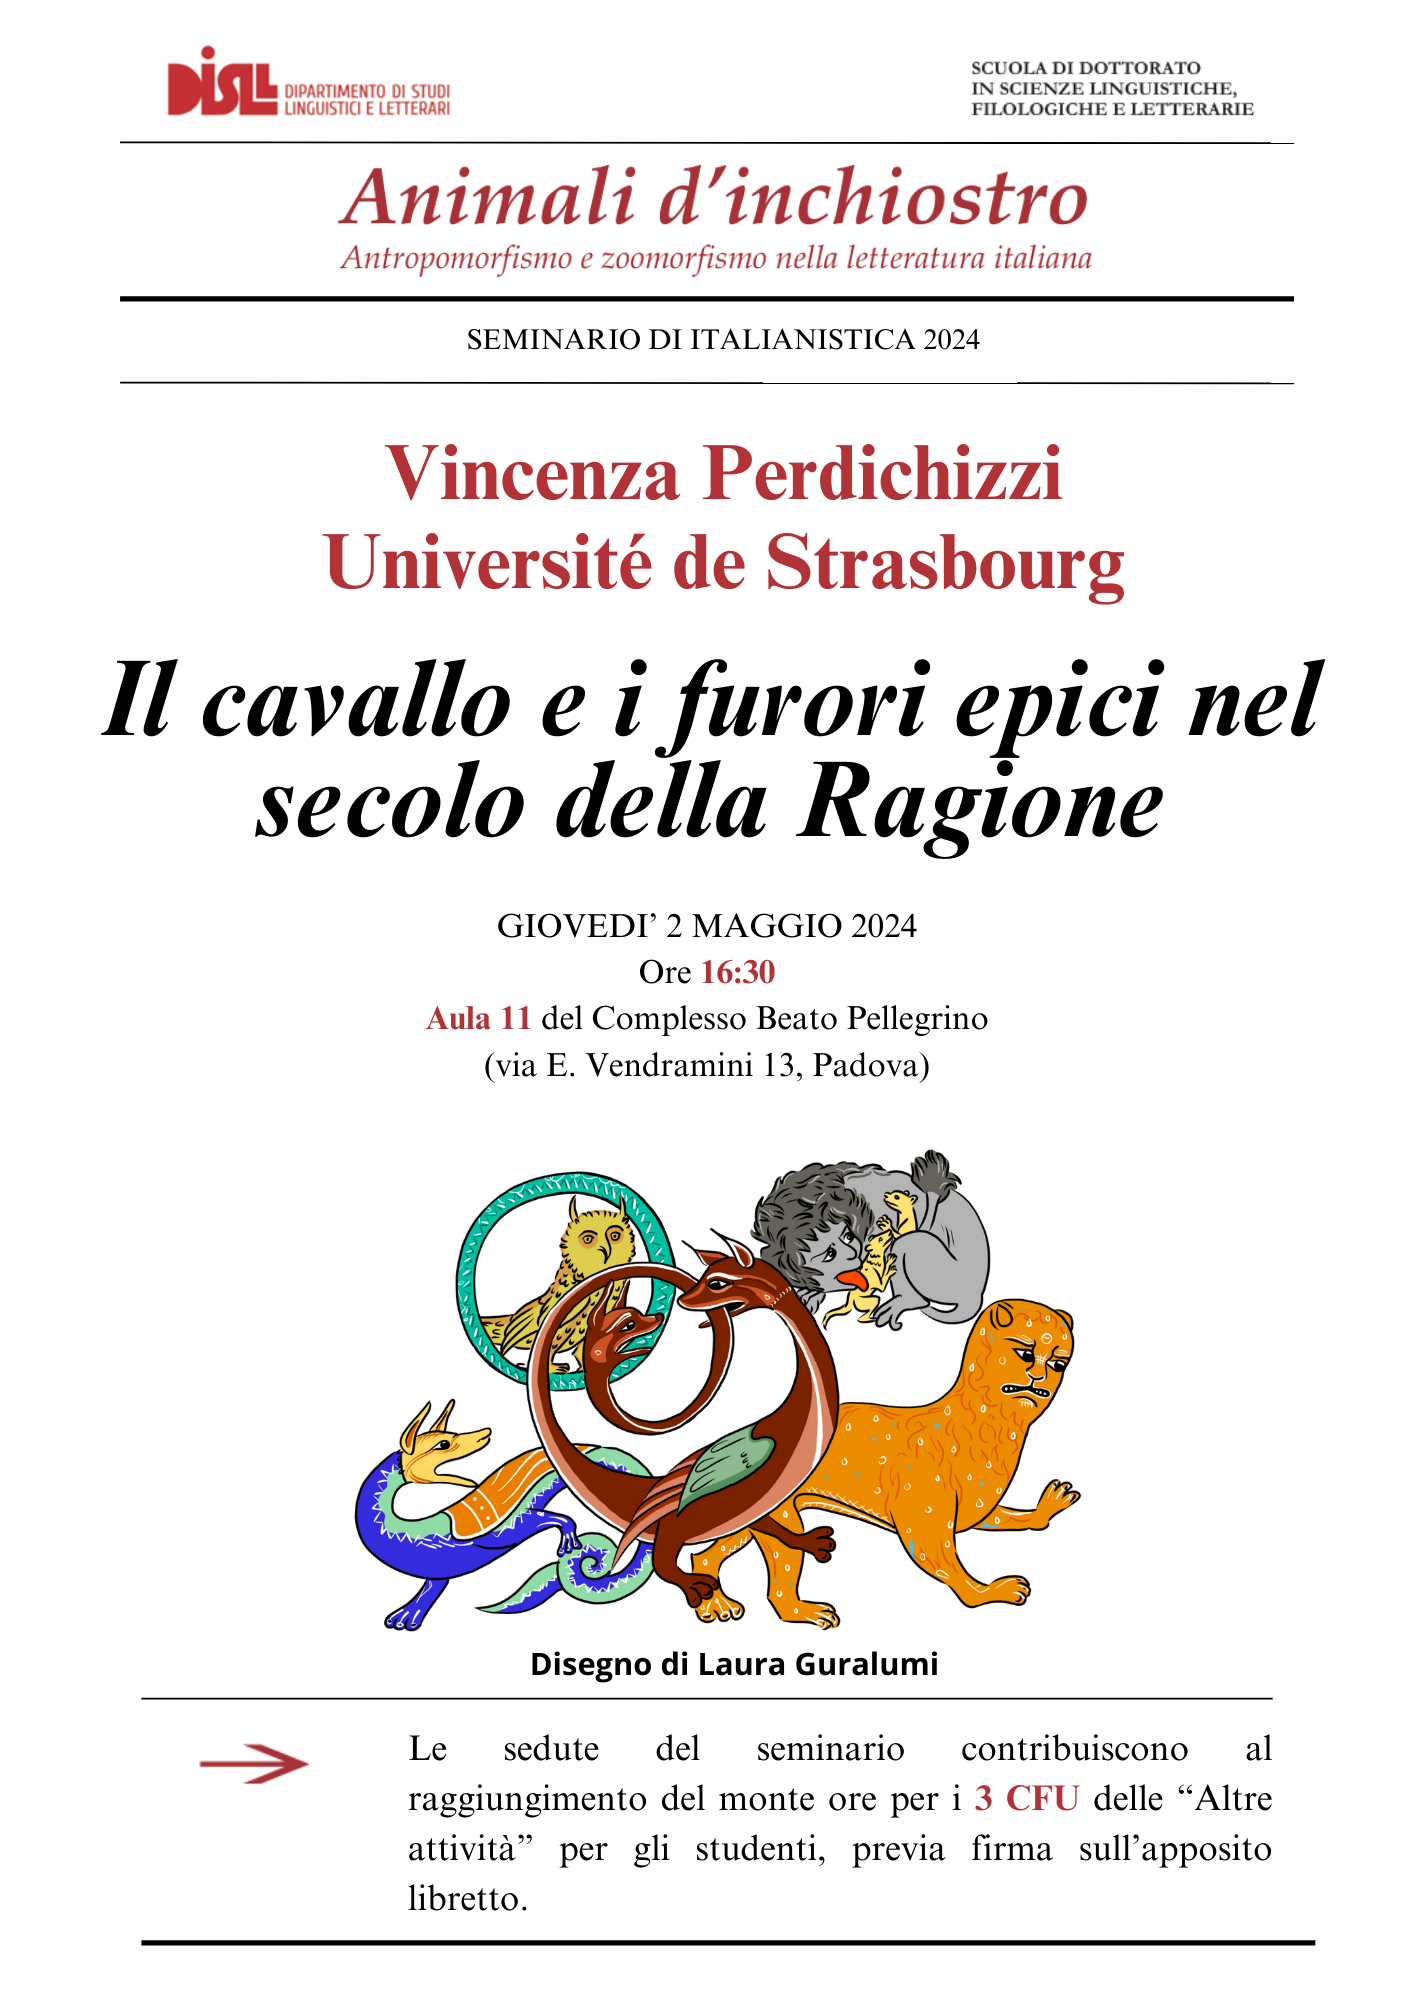 Allegato 02.05.2024 Locandina seminario di italianistica.png